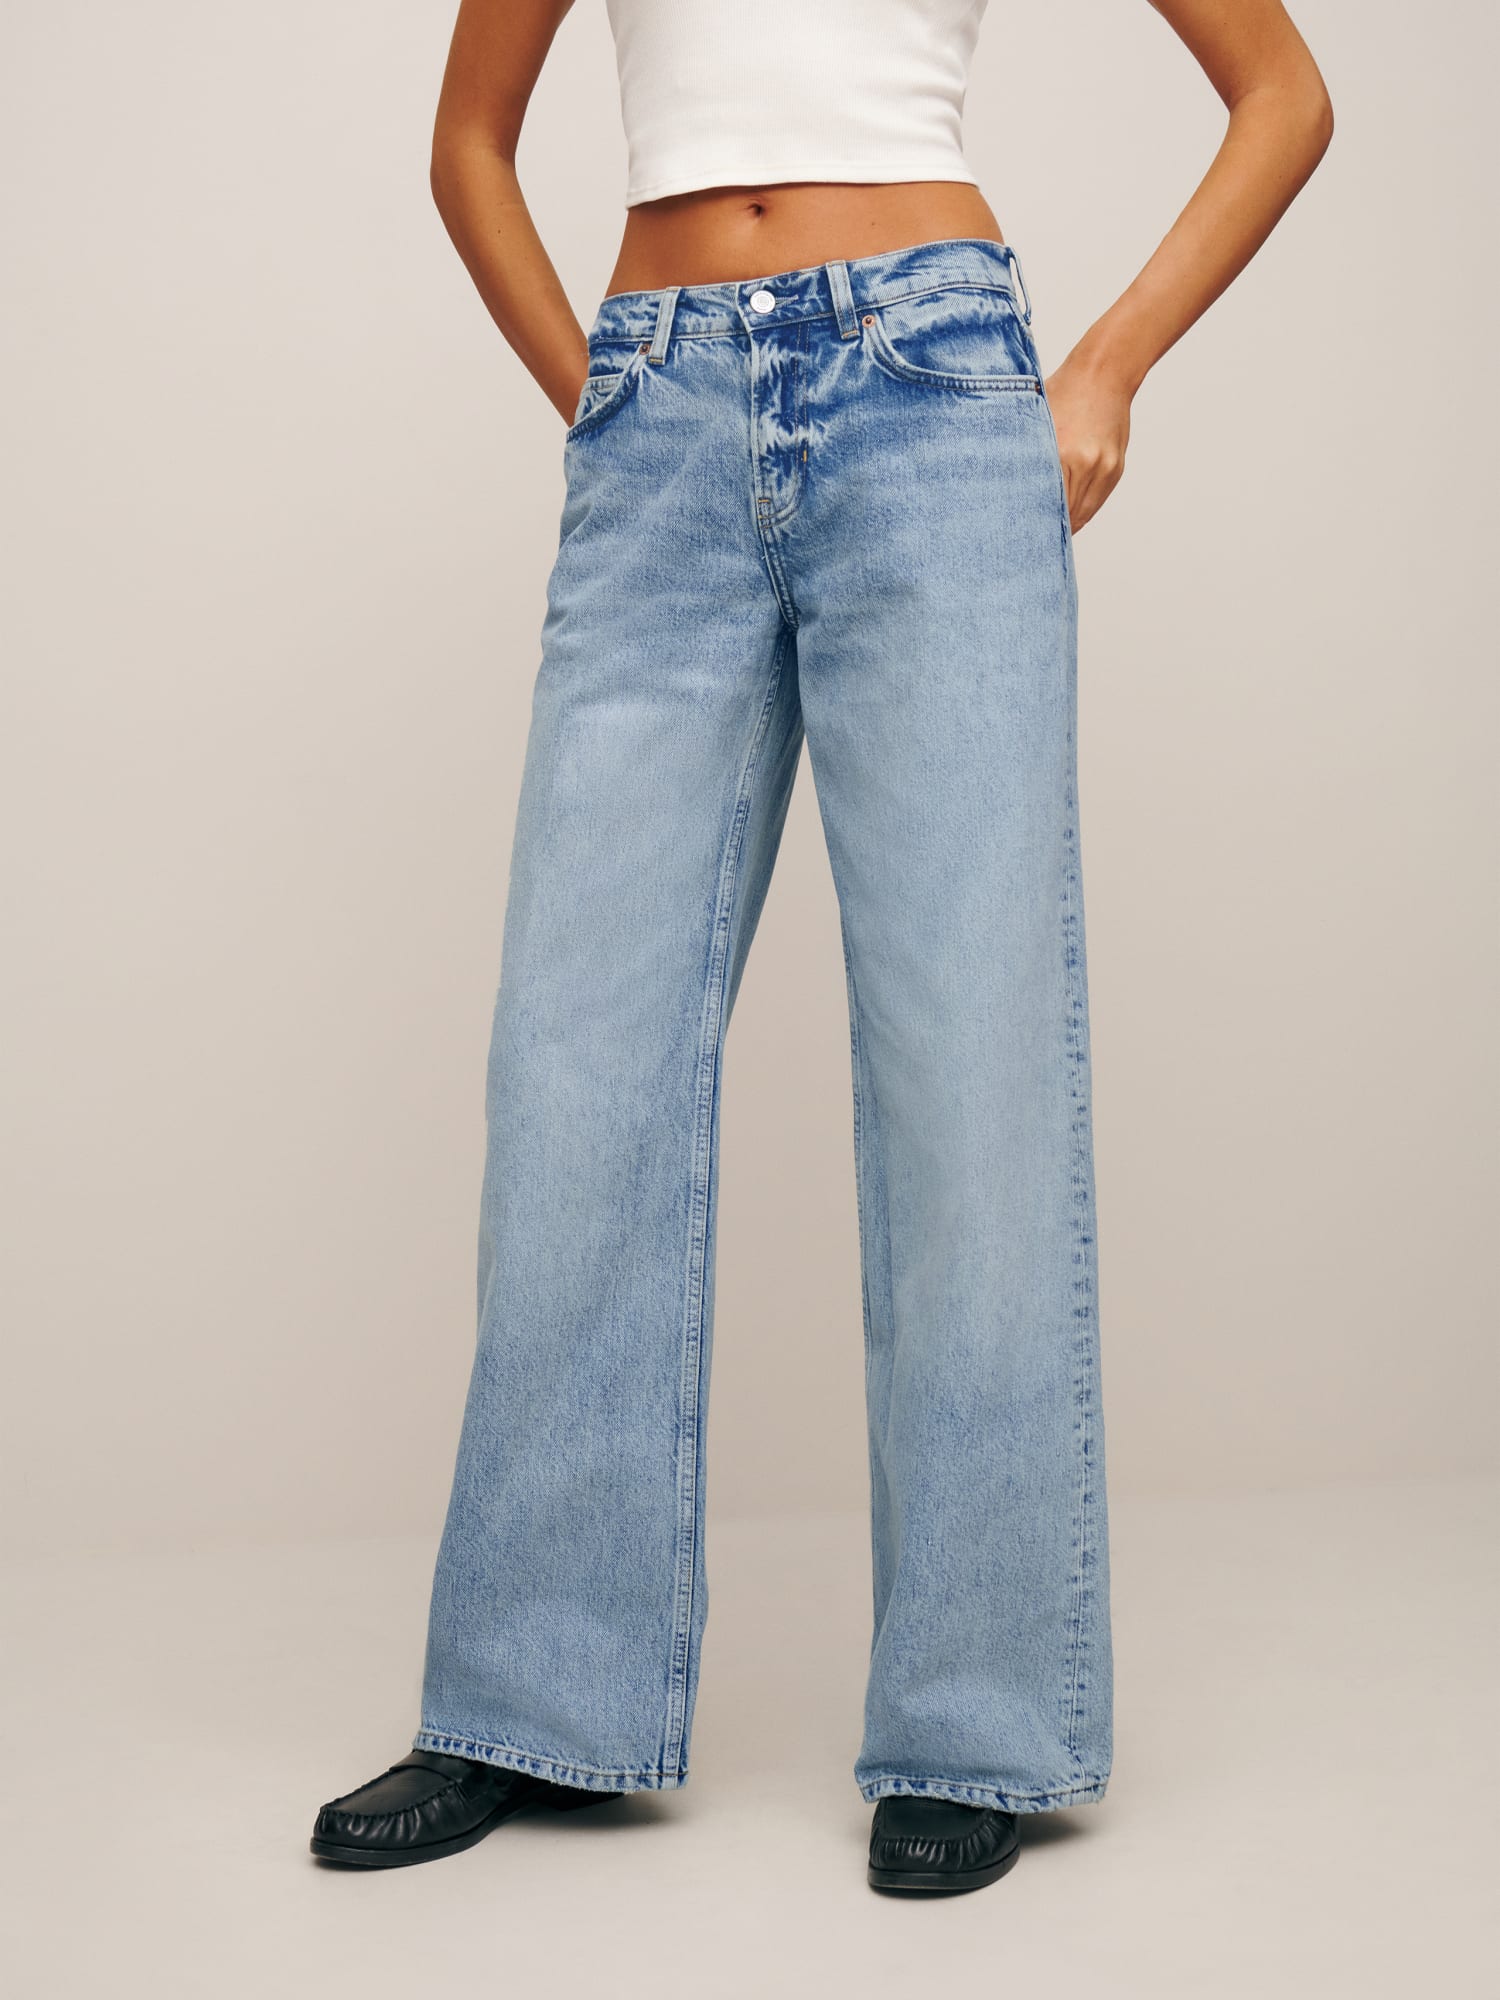 Wideleg mid-rise jeans - Women